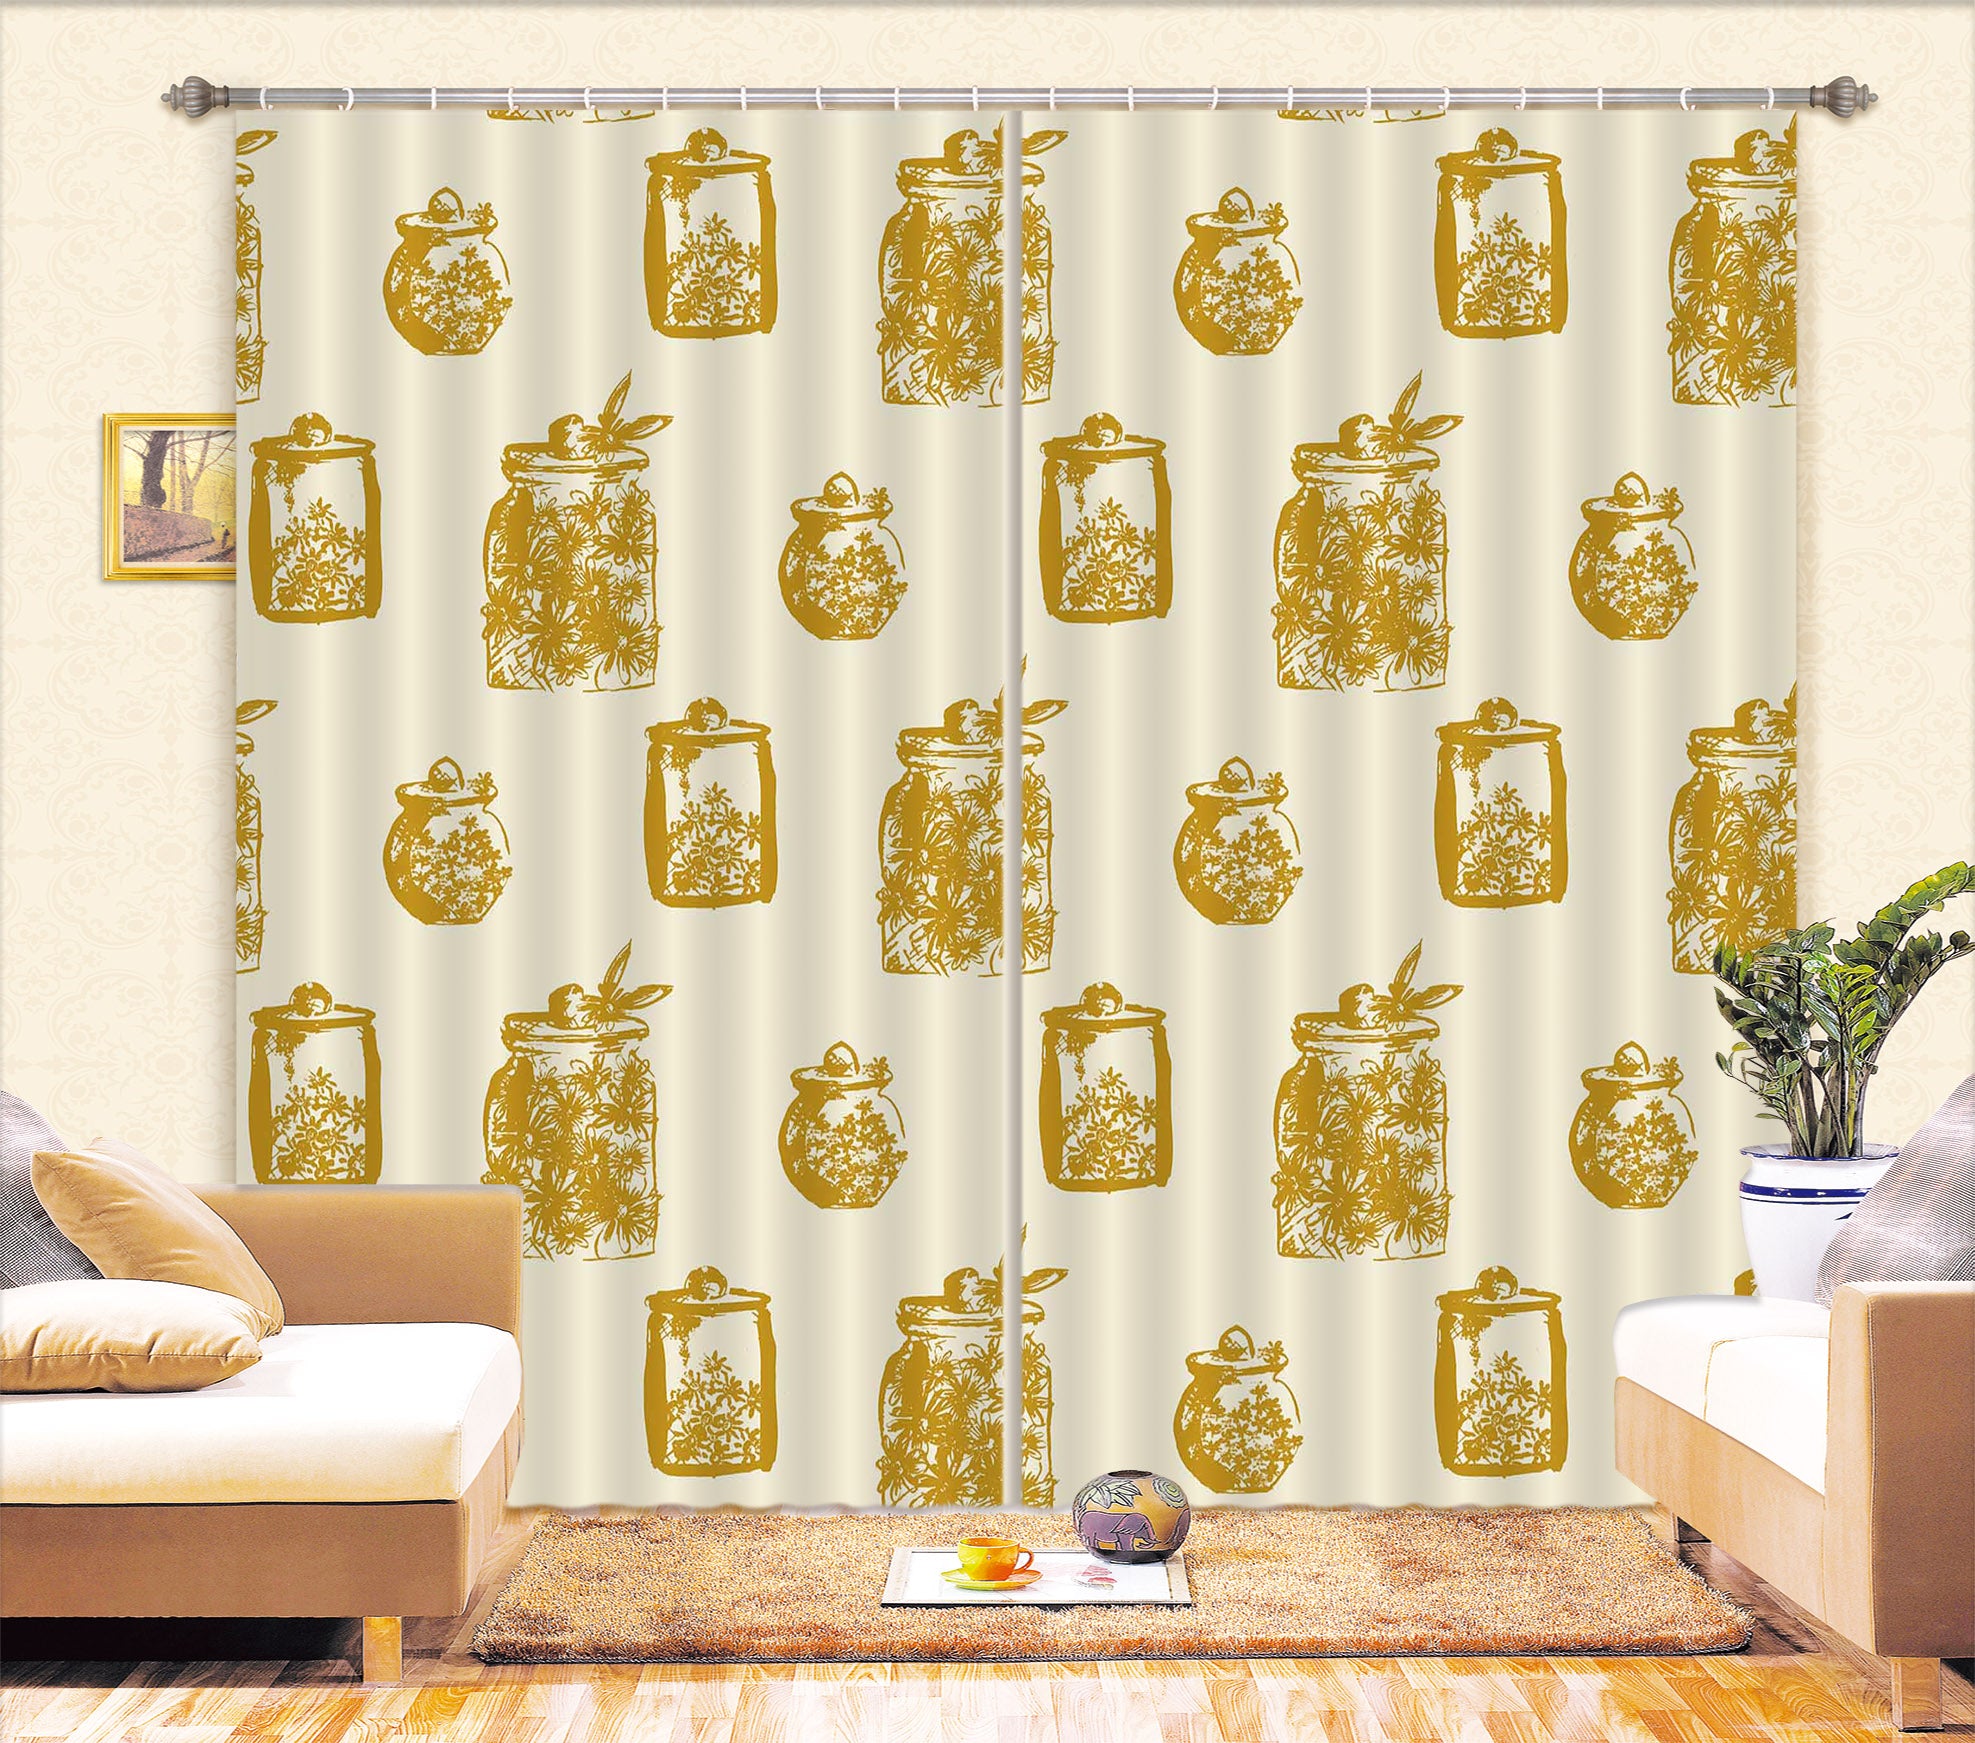 3D Jar Pattern 11189 Kashmira Jayaprakash Curtain Curtains Drapes